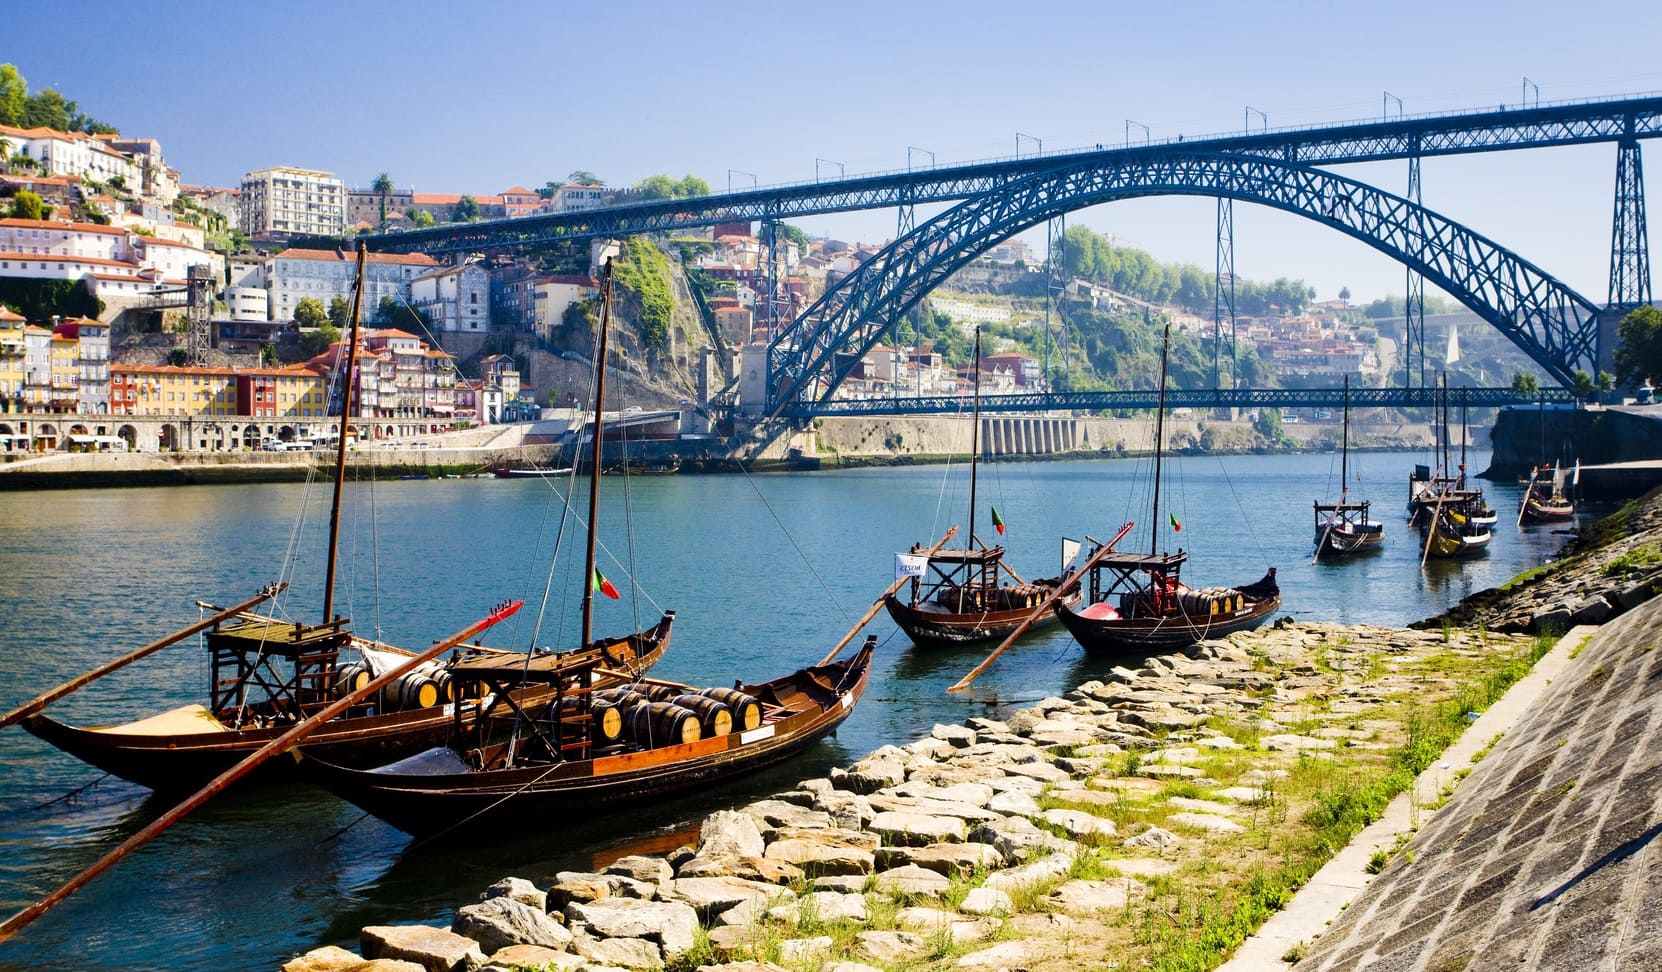 Tour of Porto - Living Tours